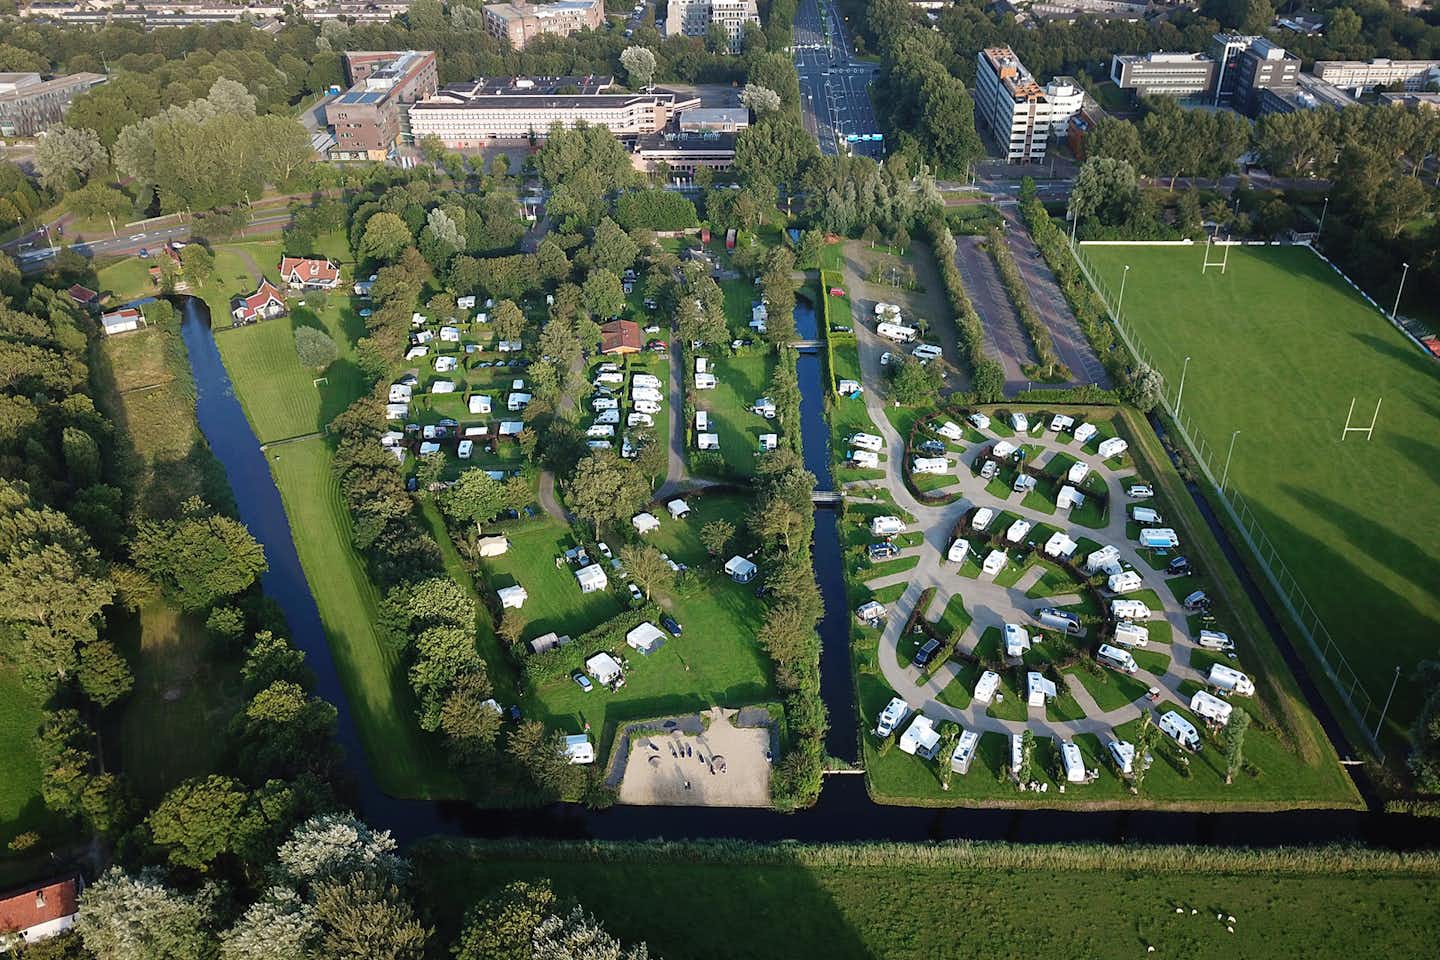 Camping Alkmaar - Übersicht auf das gesamte Campingplatz Gelände 